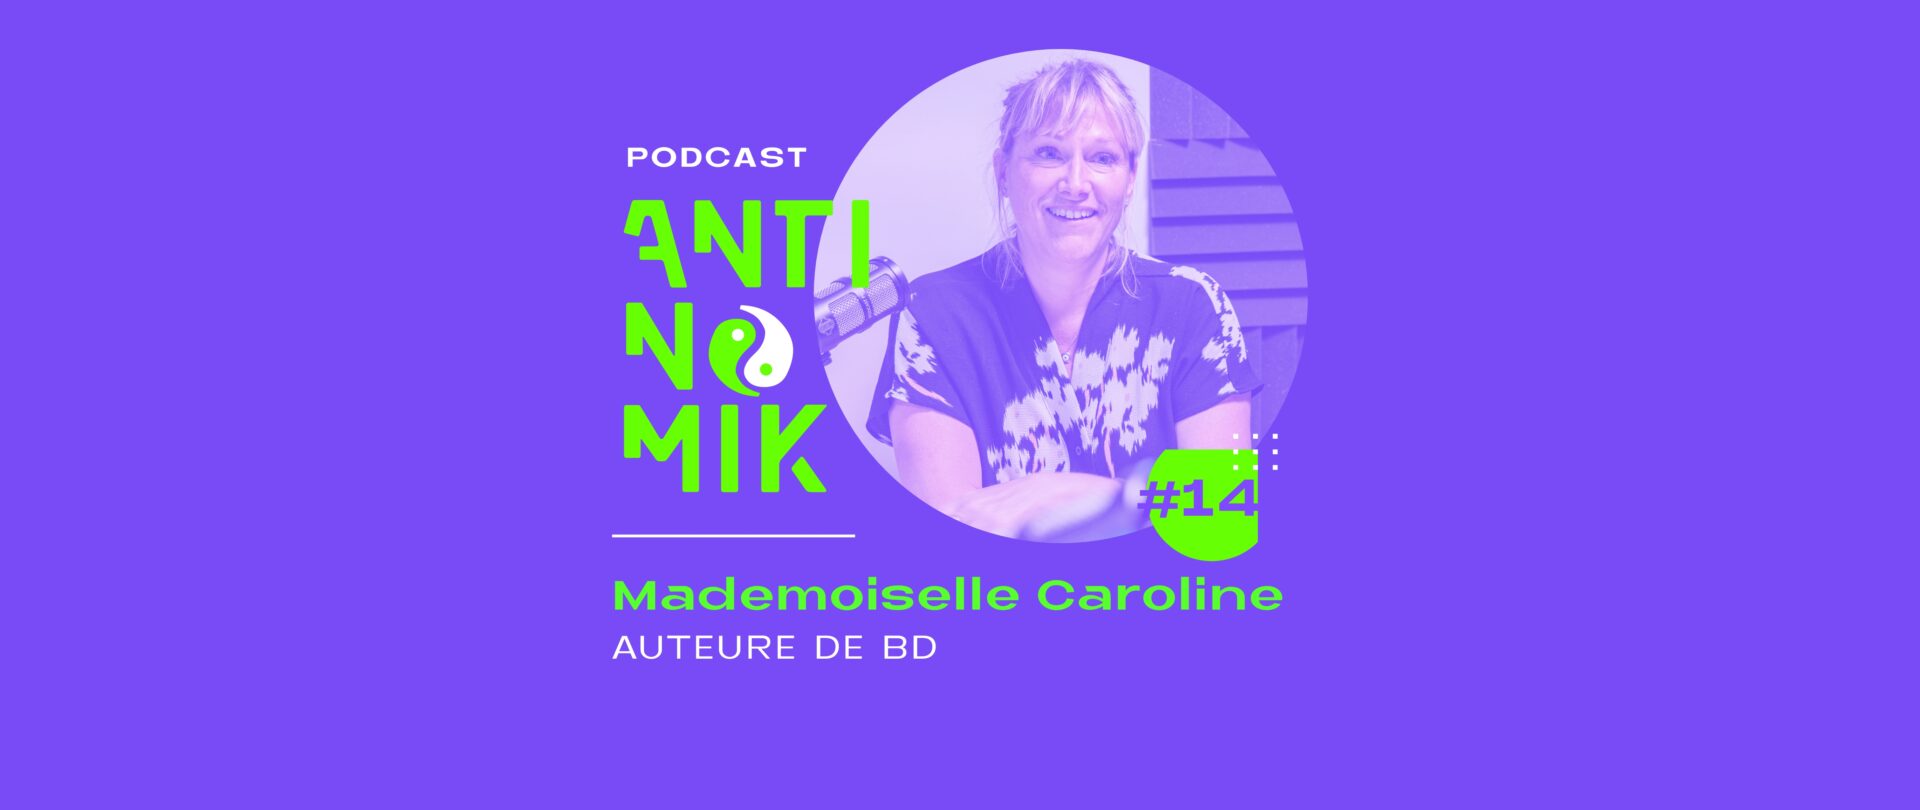 Mademoiselle Caroline – Auteure de BD